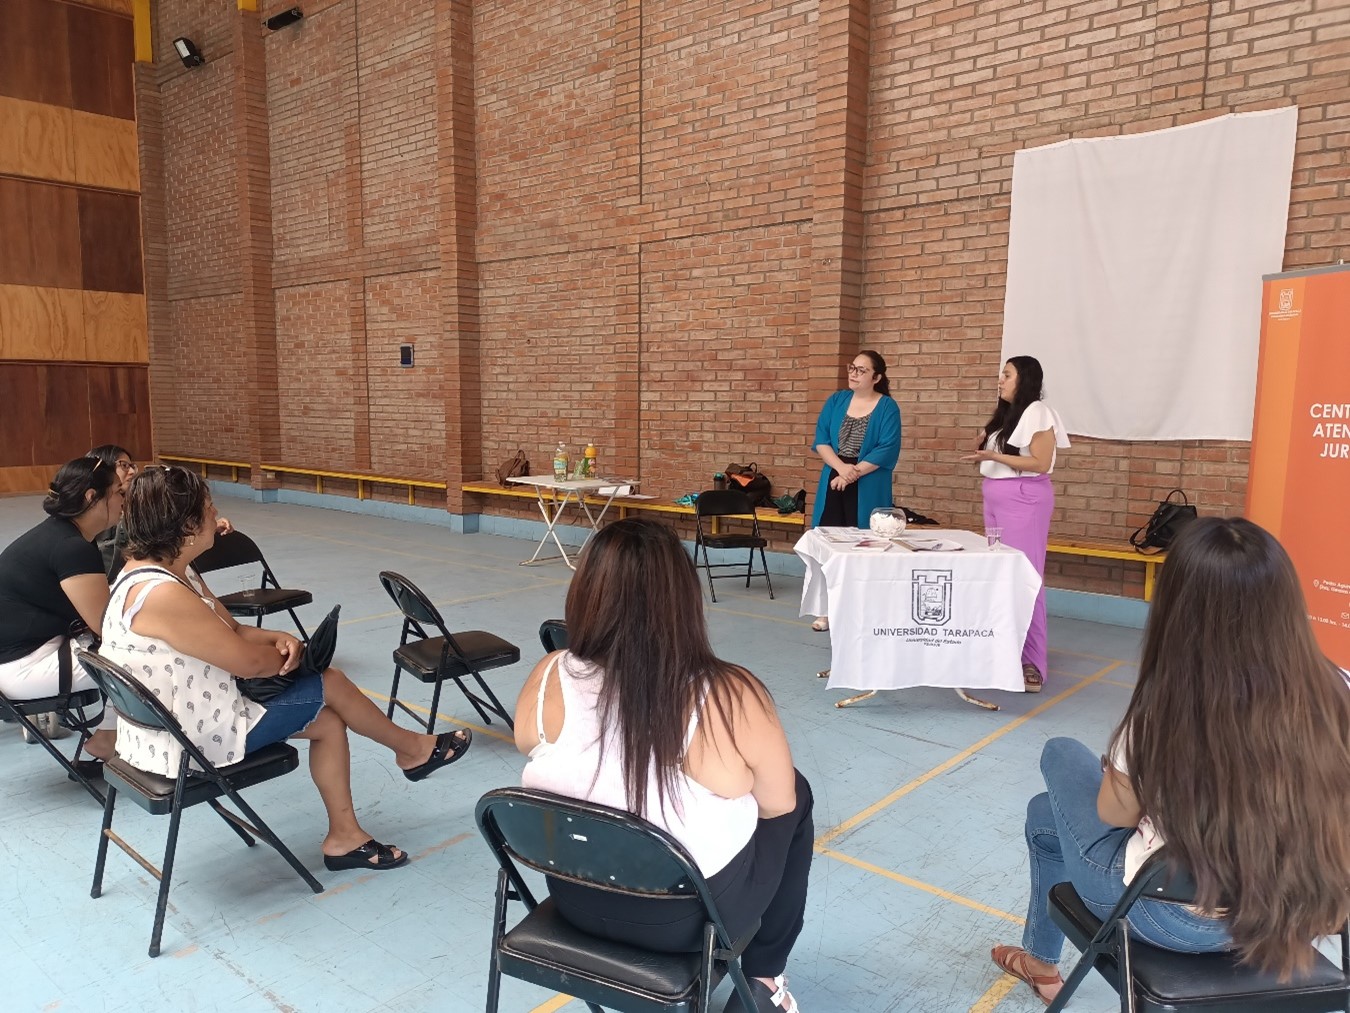 Centro de Atención Jurídica de la Universidad Tarapacá realiza jornada de difusión